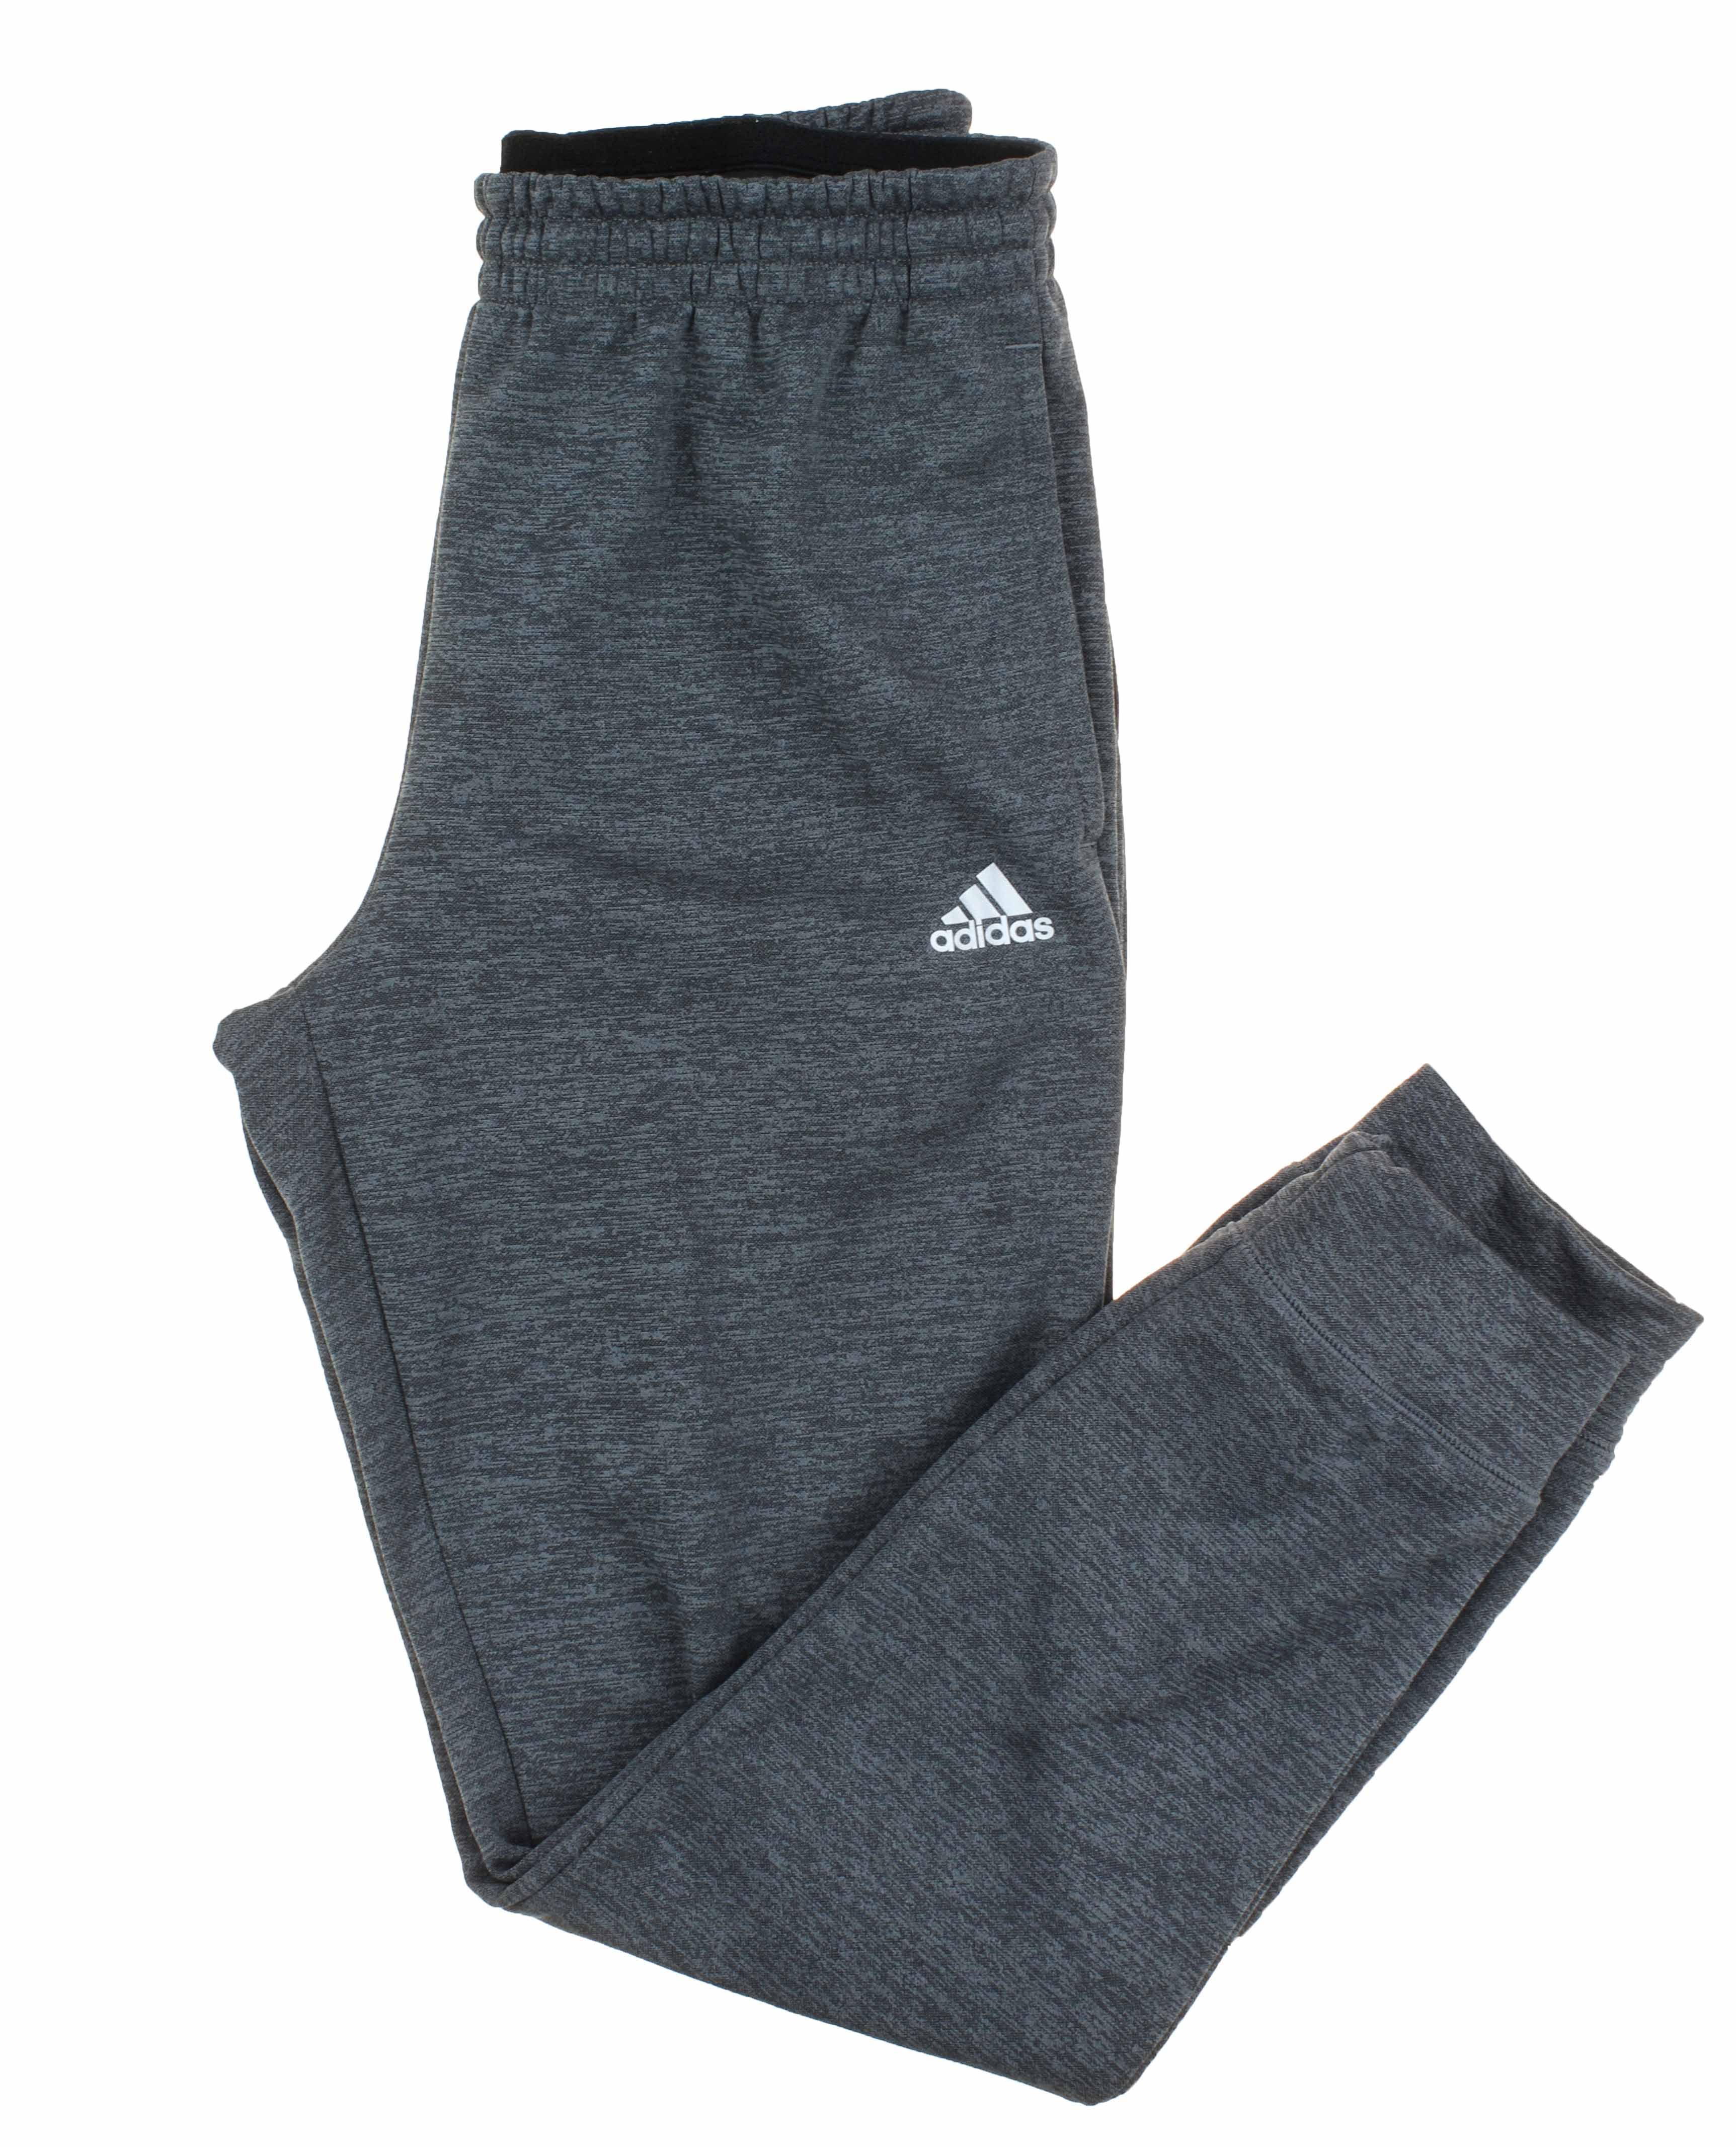 adidas men's tech fleece climawarm sweatpant pants